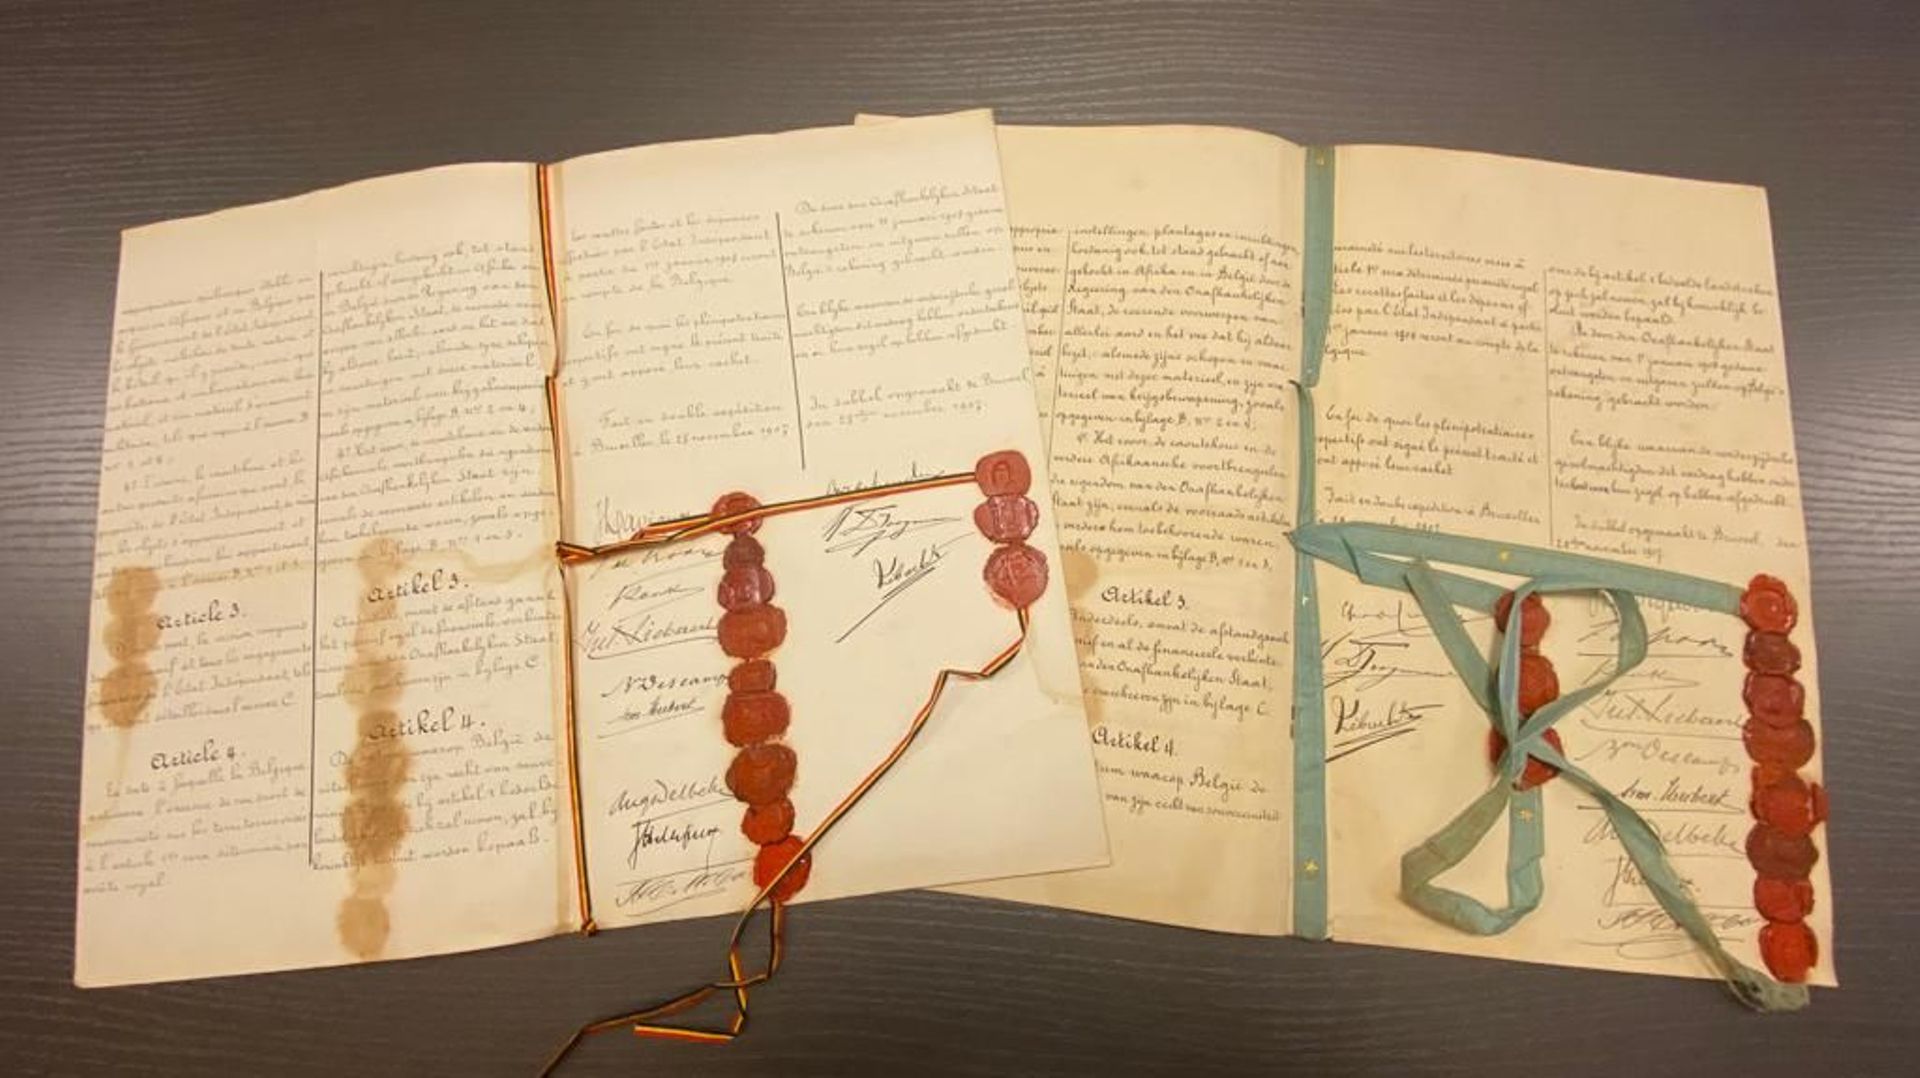 Les deux exemplaires du Traité de cession de "l’Etat Indépendant du Congo" de Léopold II à l’Etat Belgique (1908)